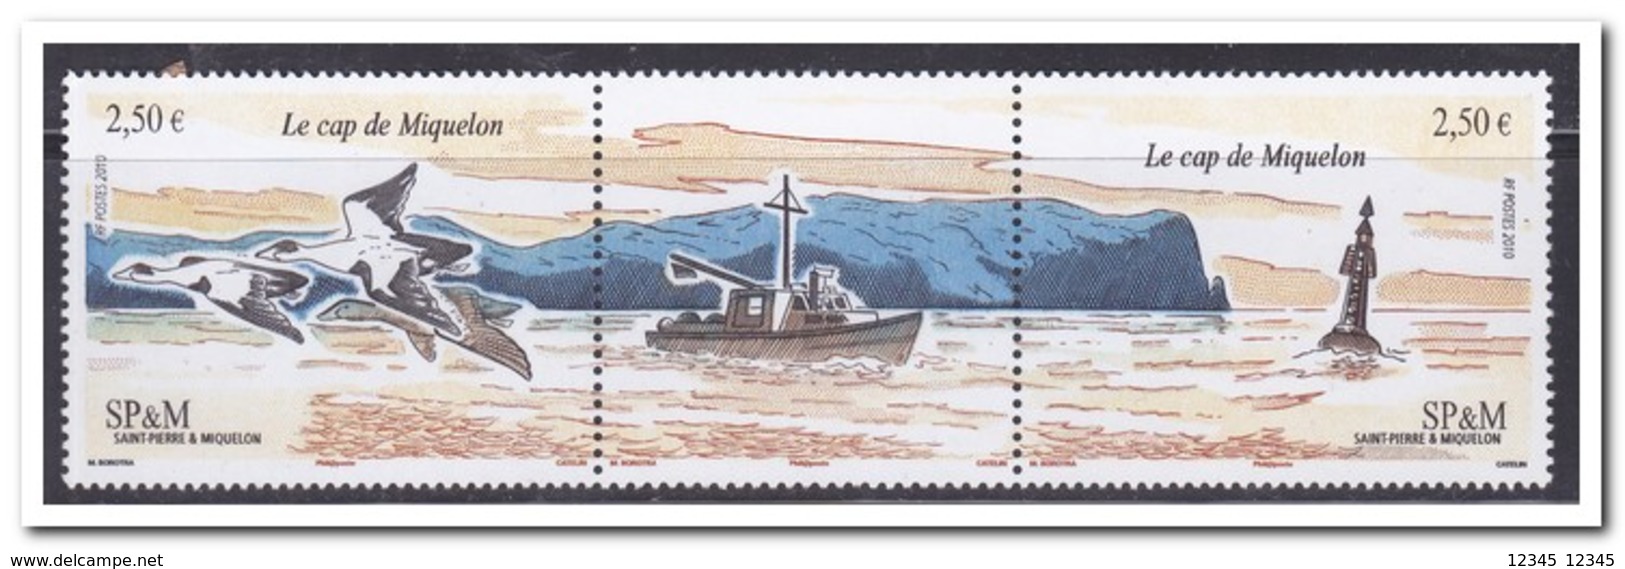 St. Pierre & Miquelon 2010, Postfris MNH, Le Cap De Miquelon - Unused Stamps